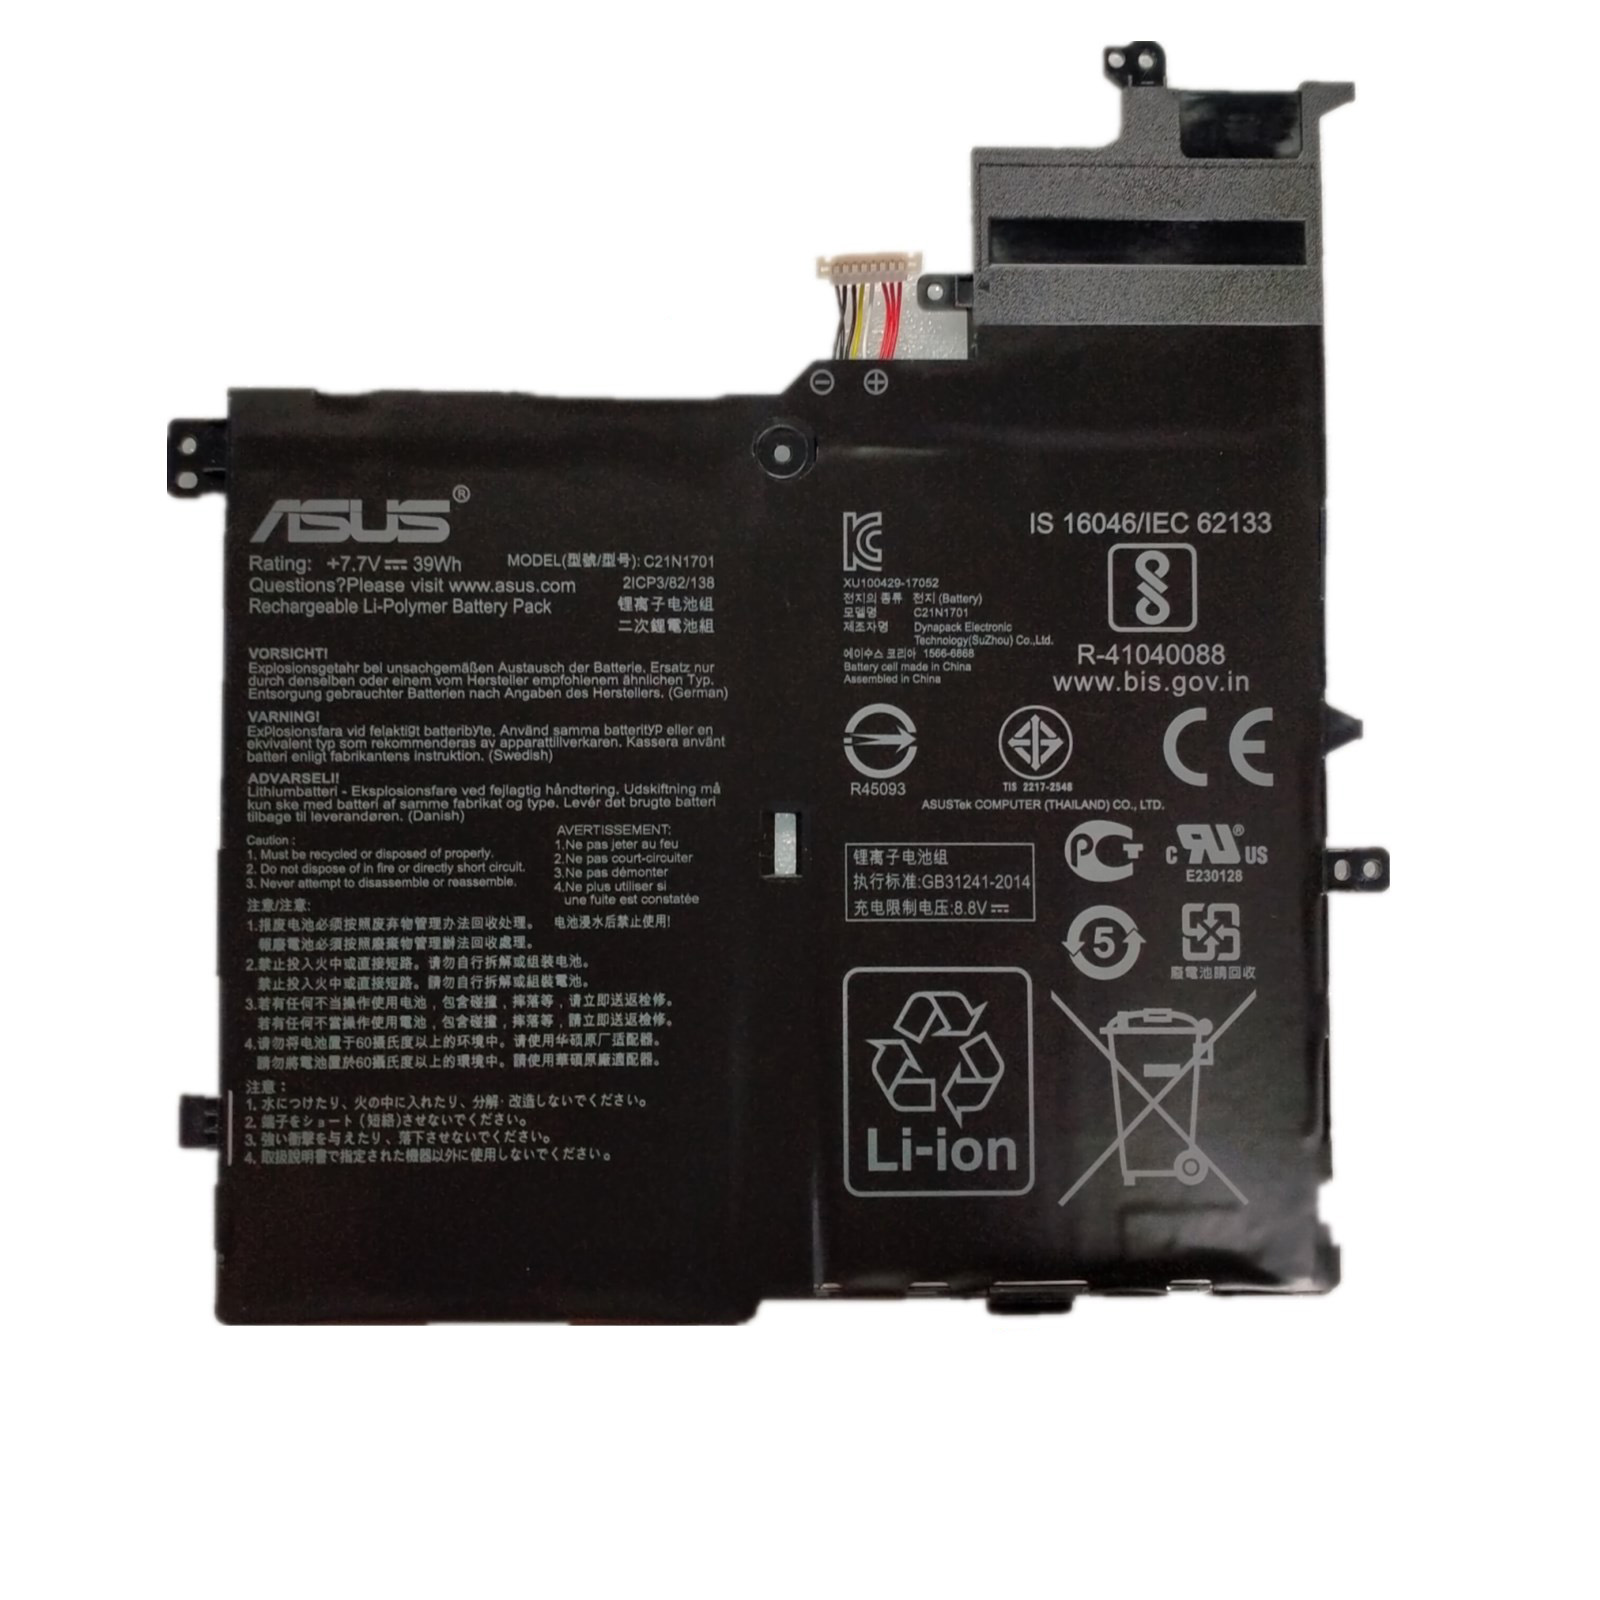 Asus VivoBook S14 S406UA-BM165T 7.7V 39Wh 5070mAh Battery